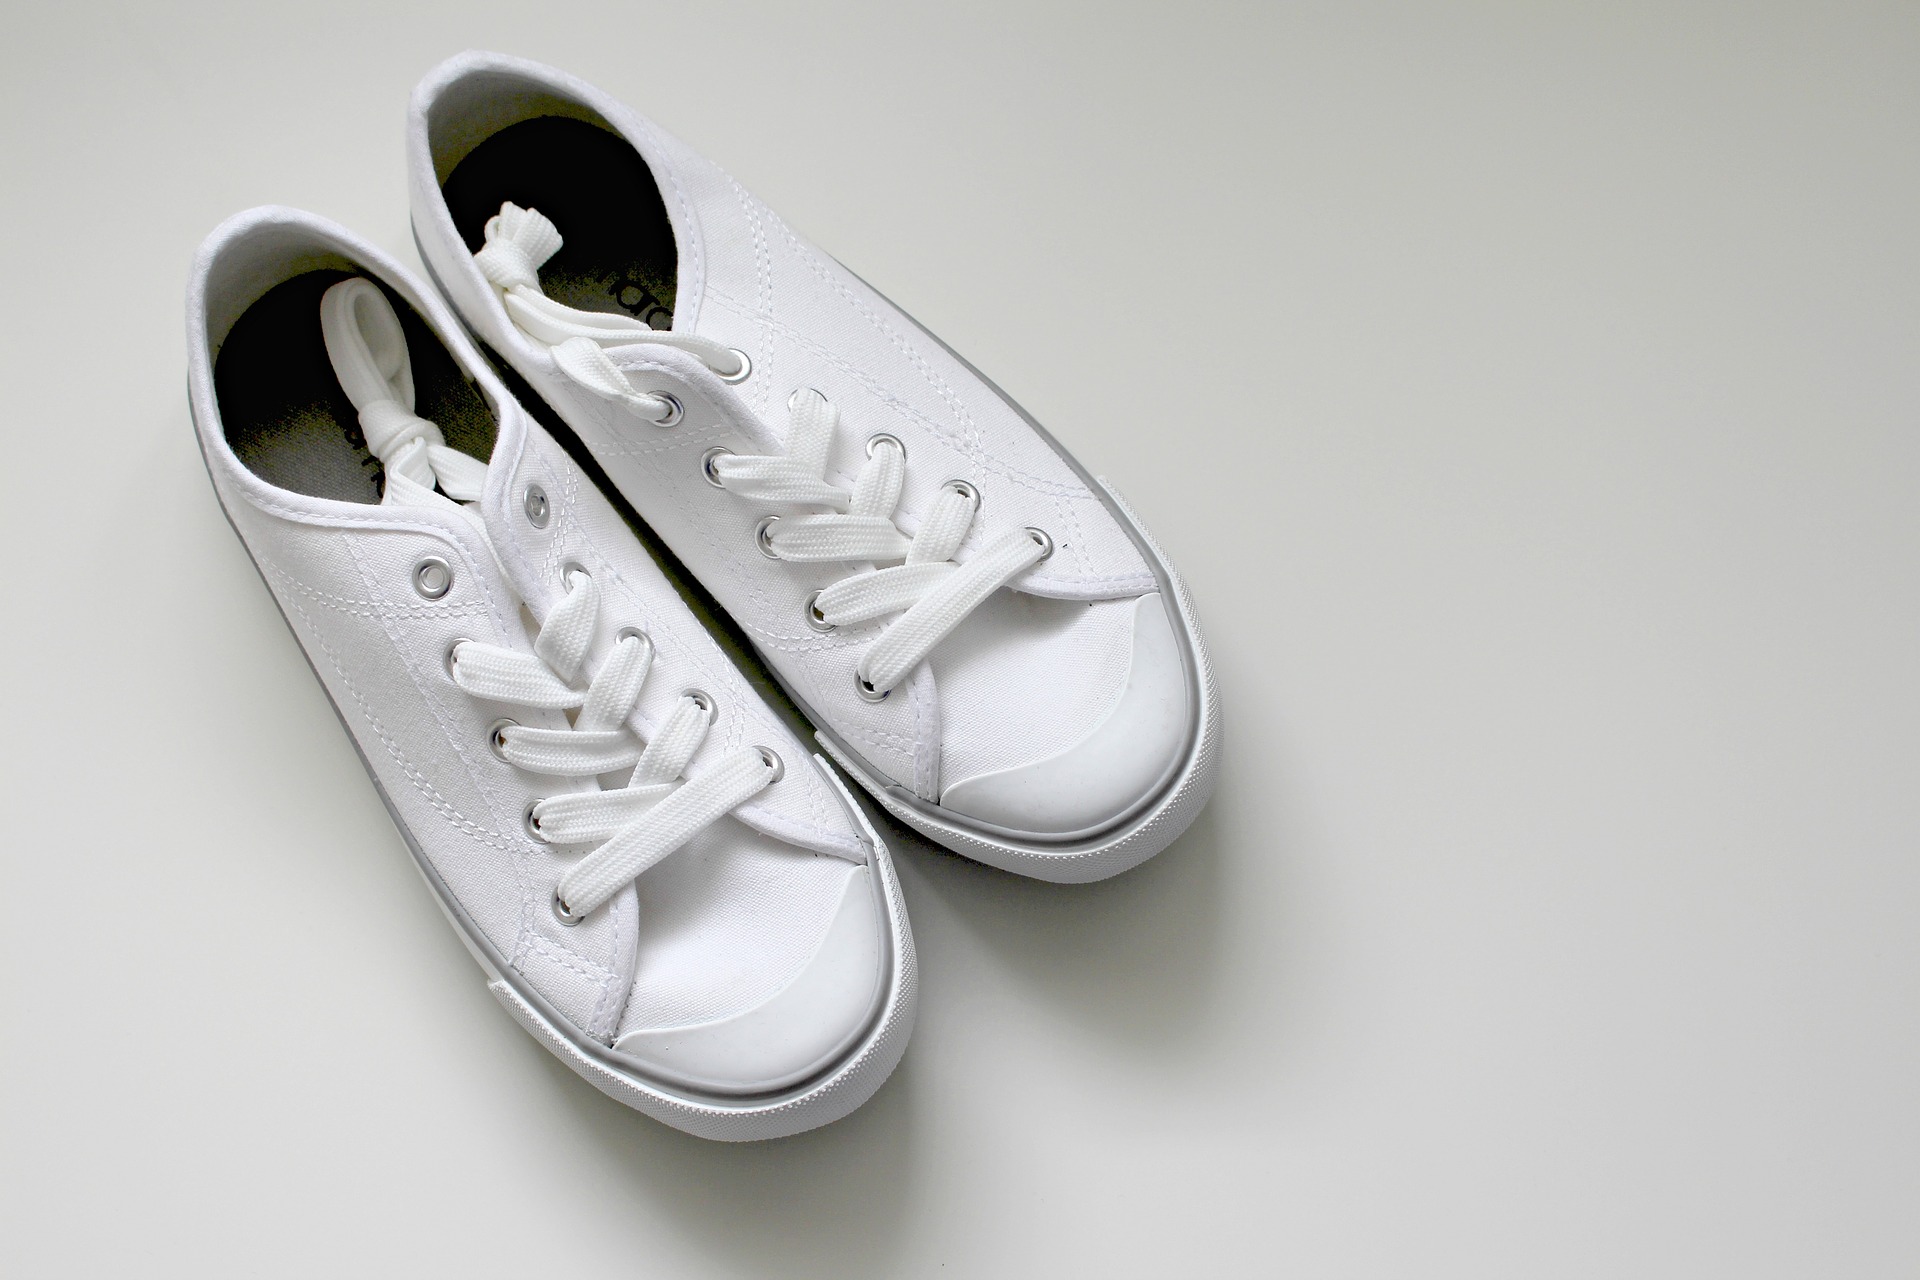 Drugie życie białych sneakersów – jak czyścić białe buty?